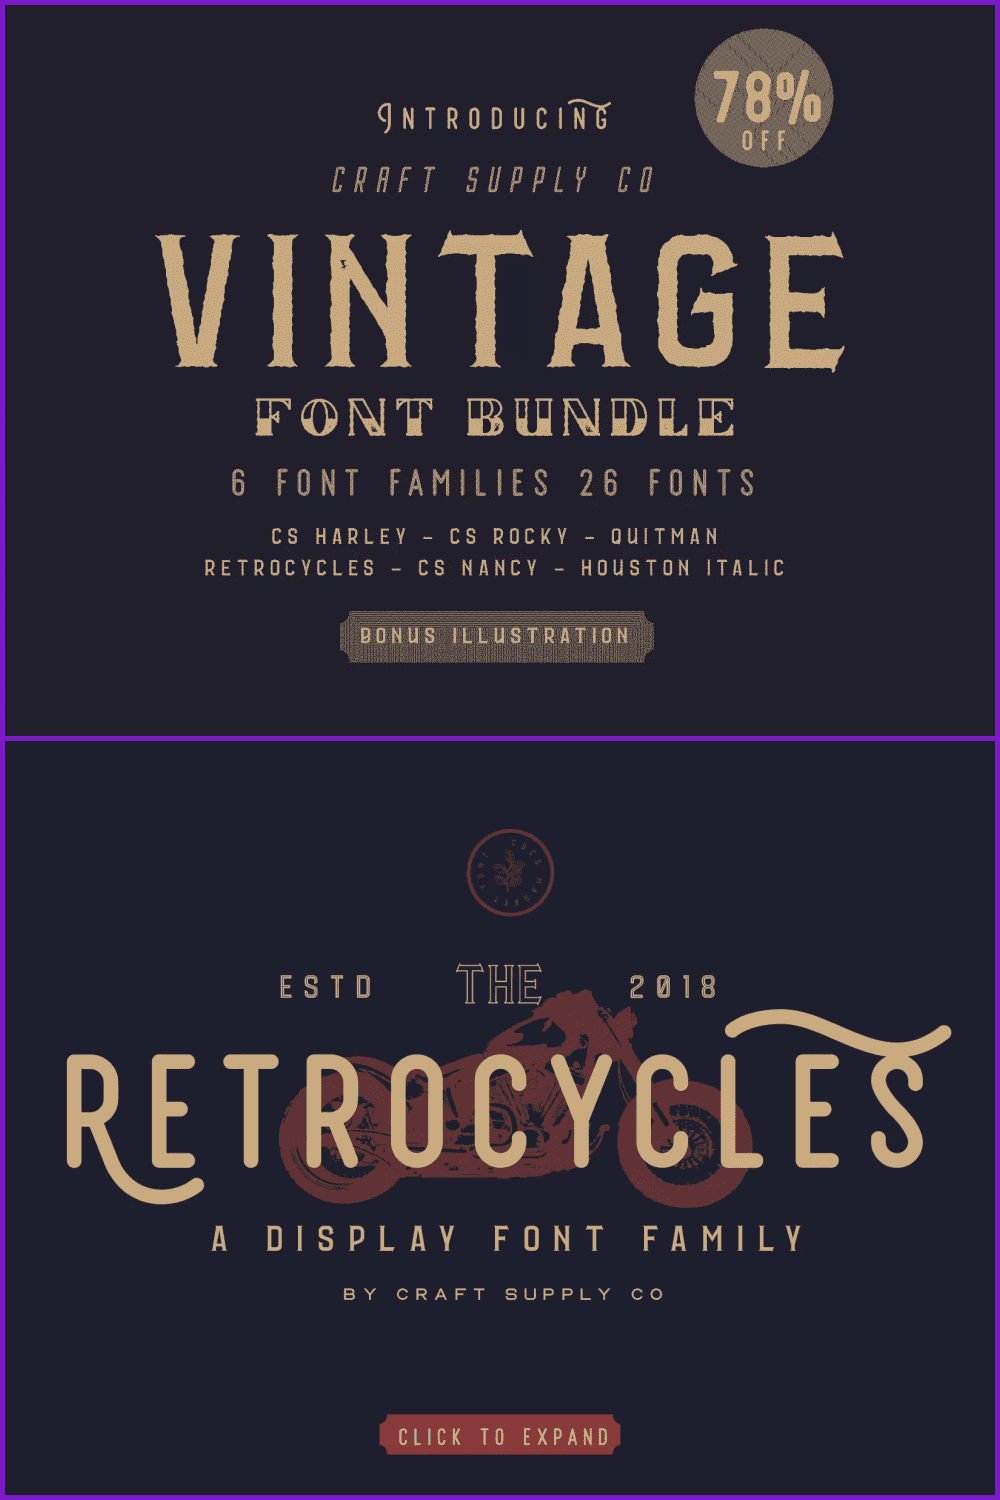 Vintage fonts on a black background.